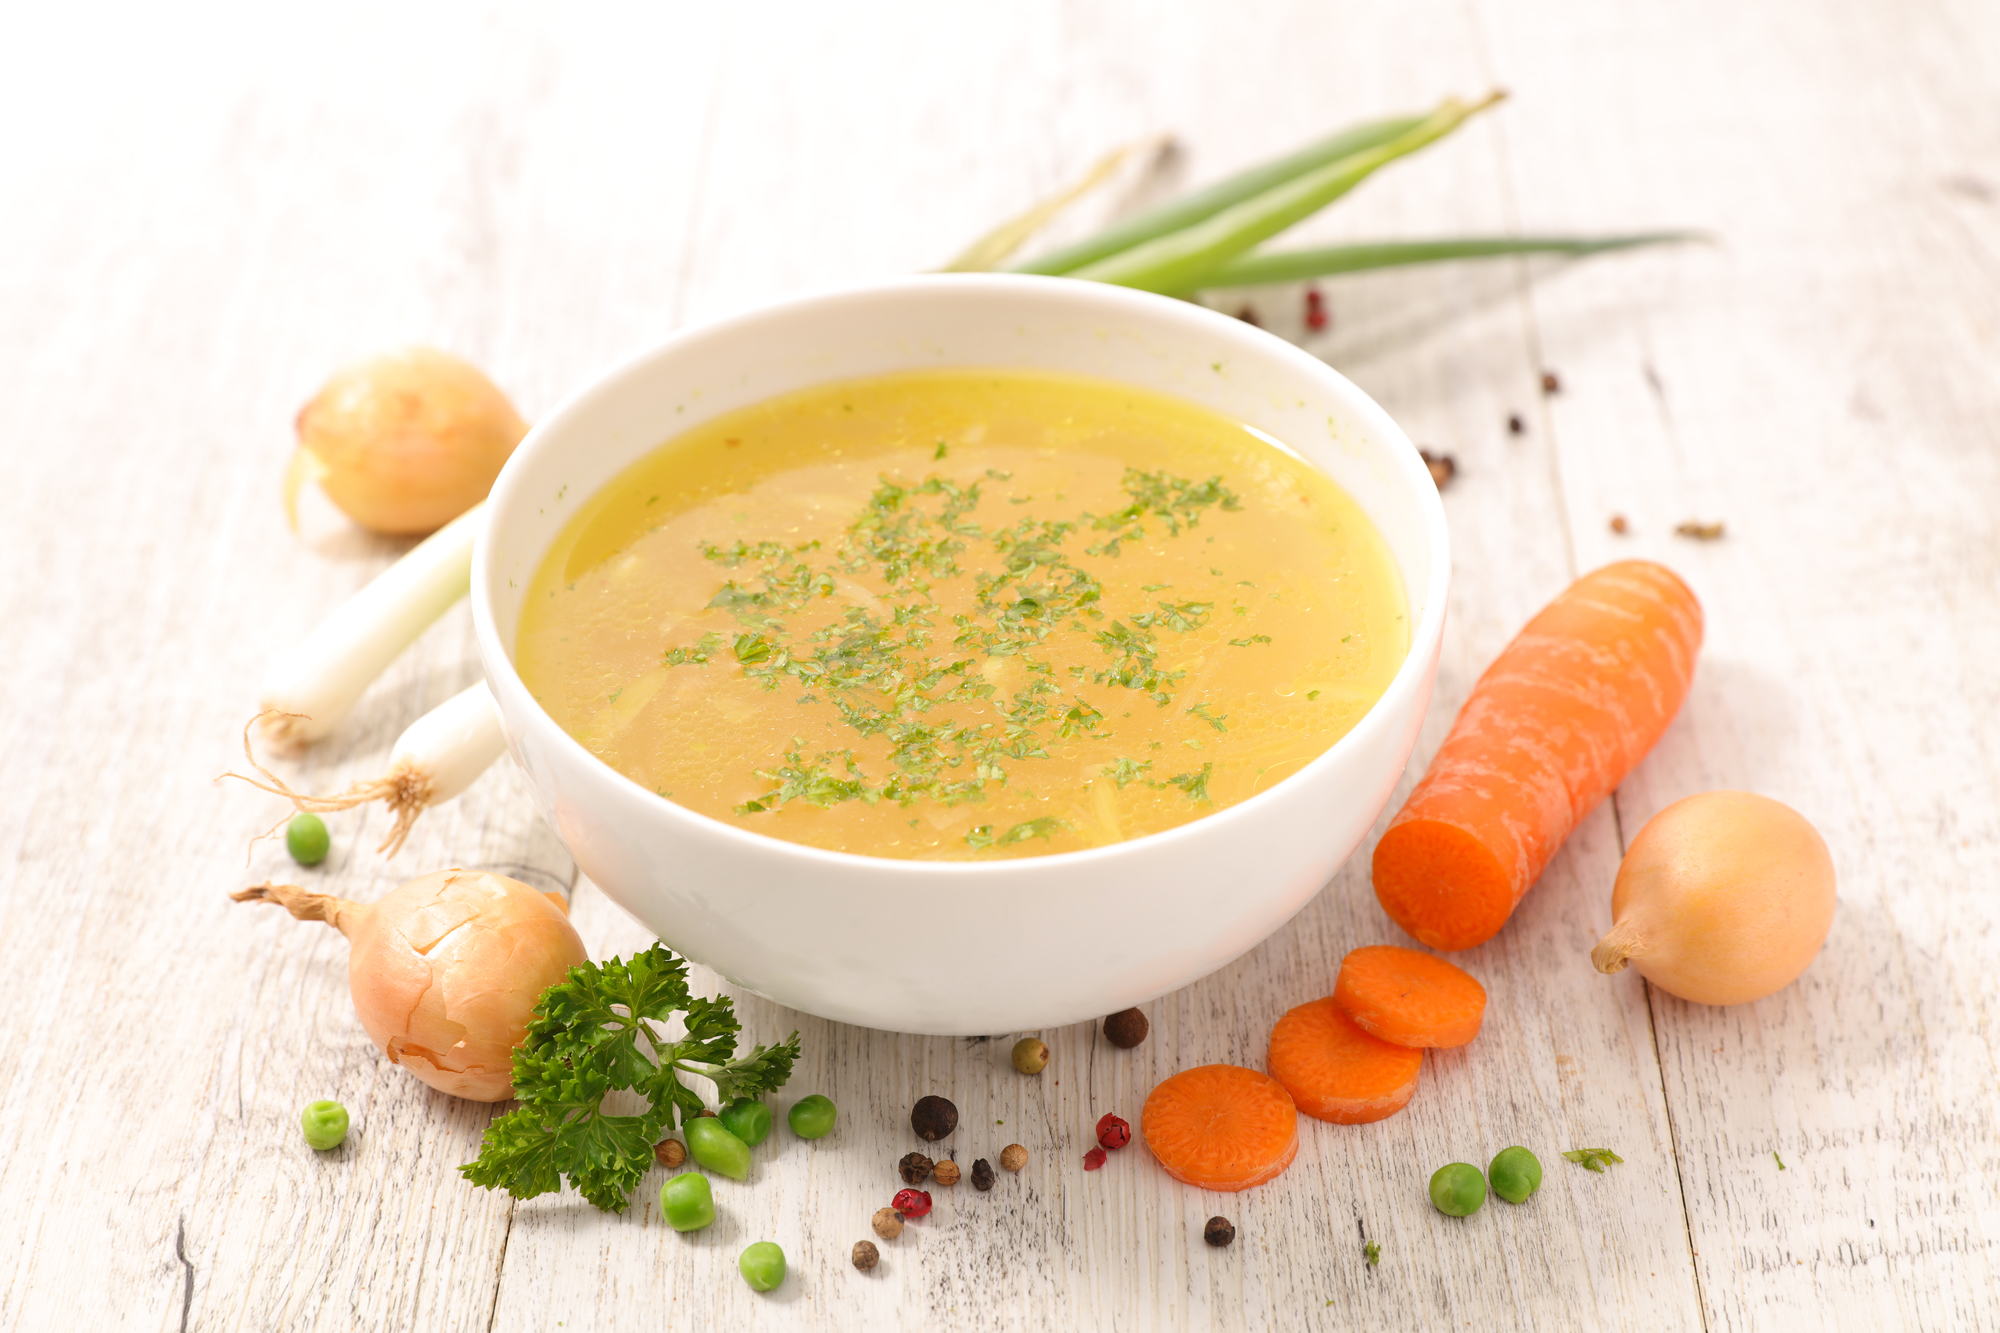 Recette soupe de poireaux-choux - Marie Claire